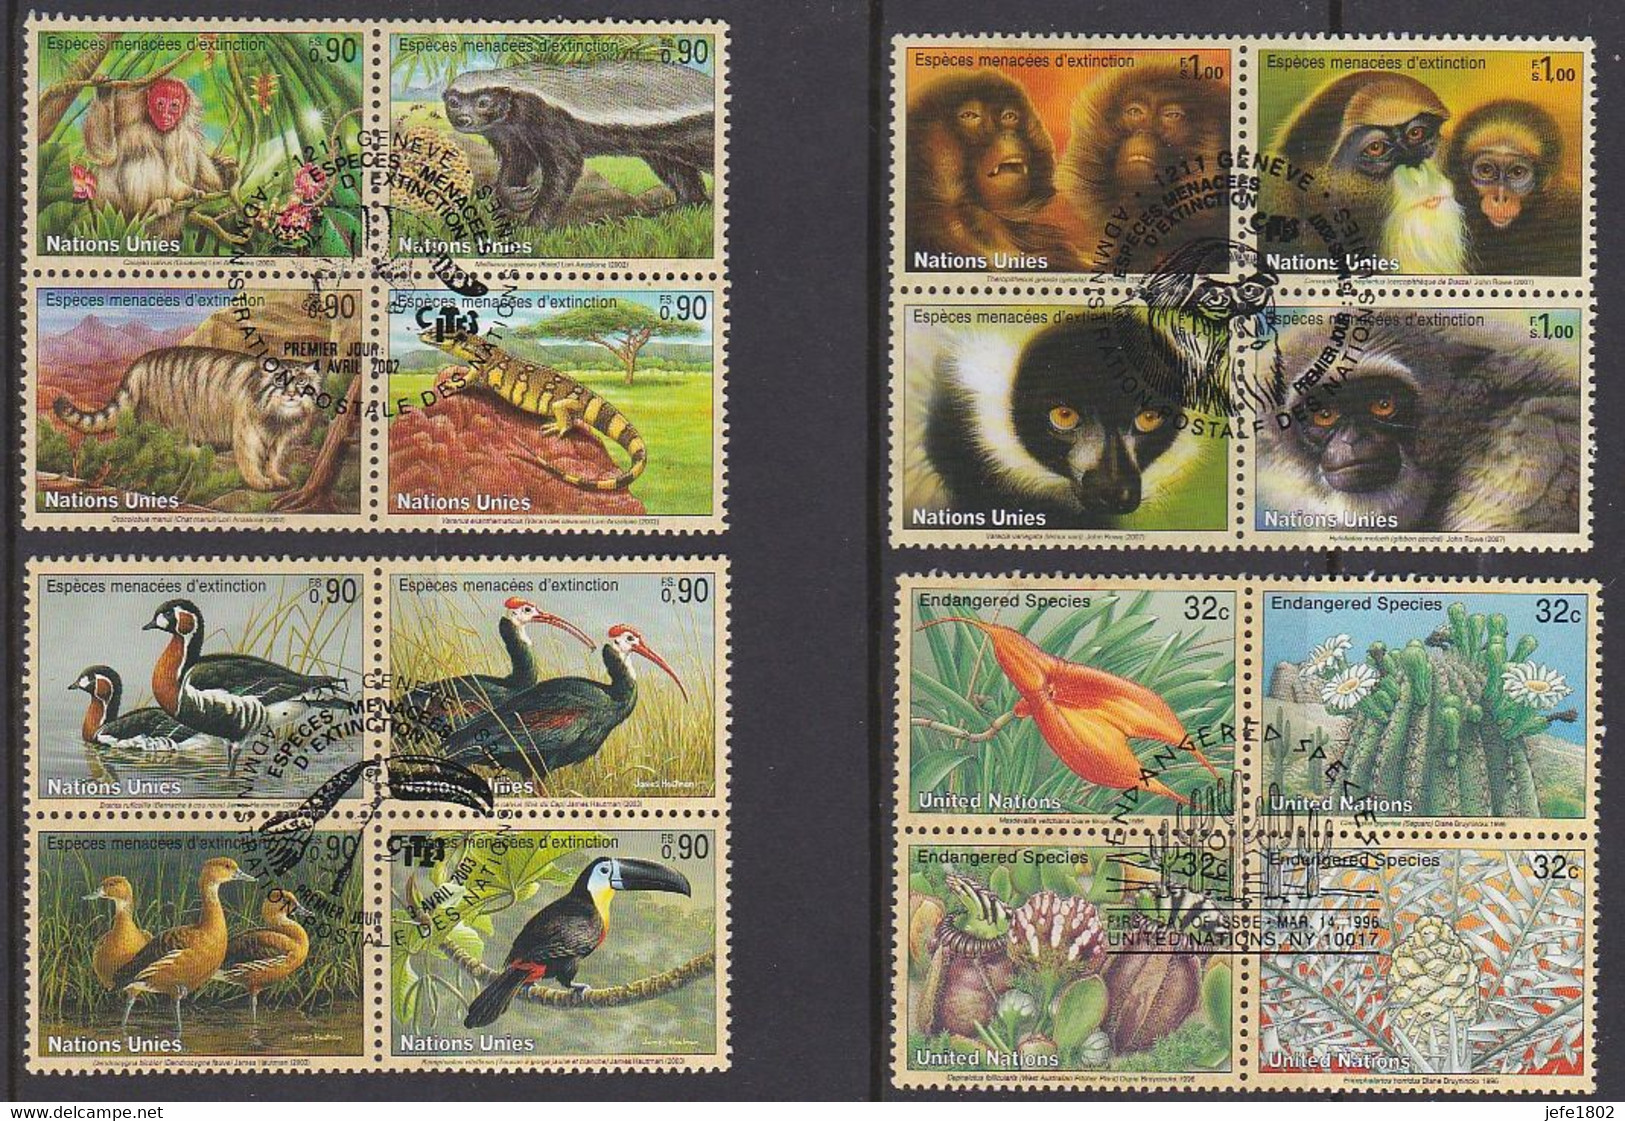 Espèces Menacées D'extinction (FS) Endangered Species (c)  - 16 Cancelled Stamps Nations Unies - United Nations - Colecciones & Series